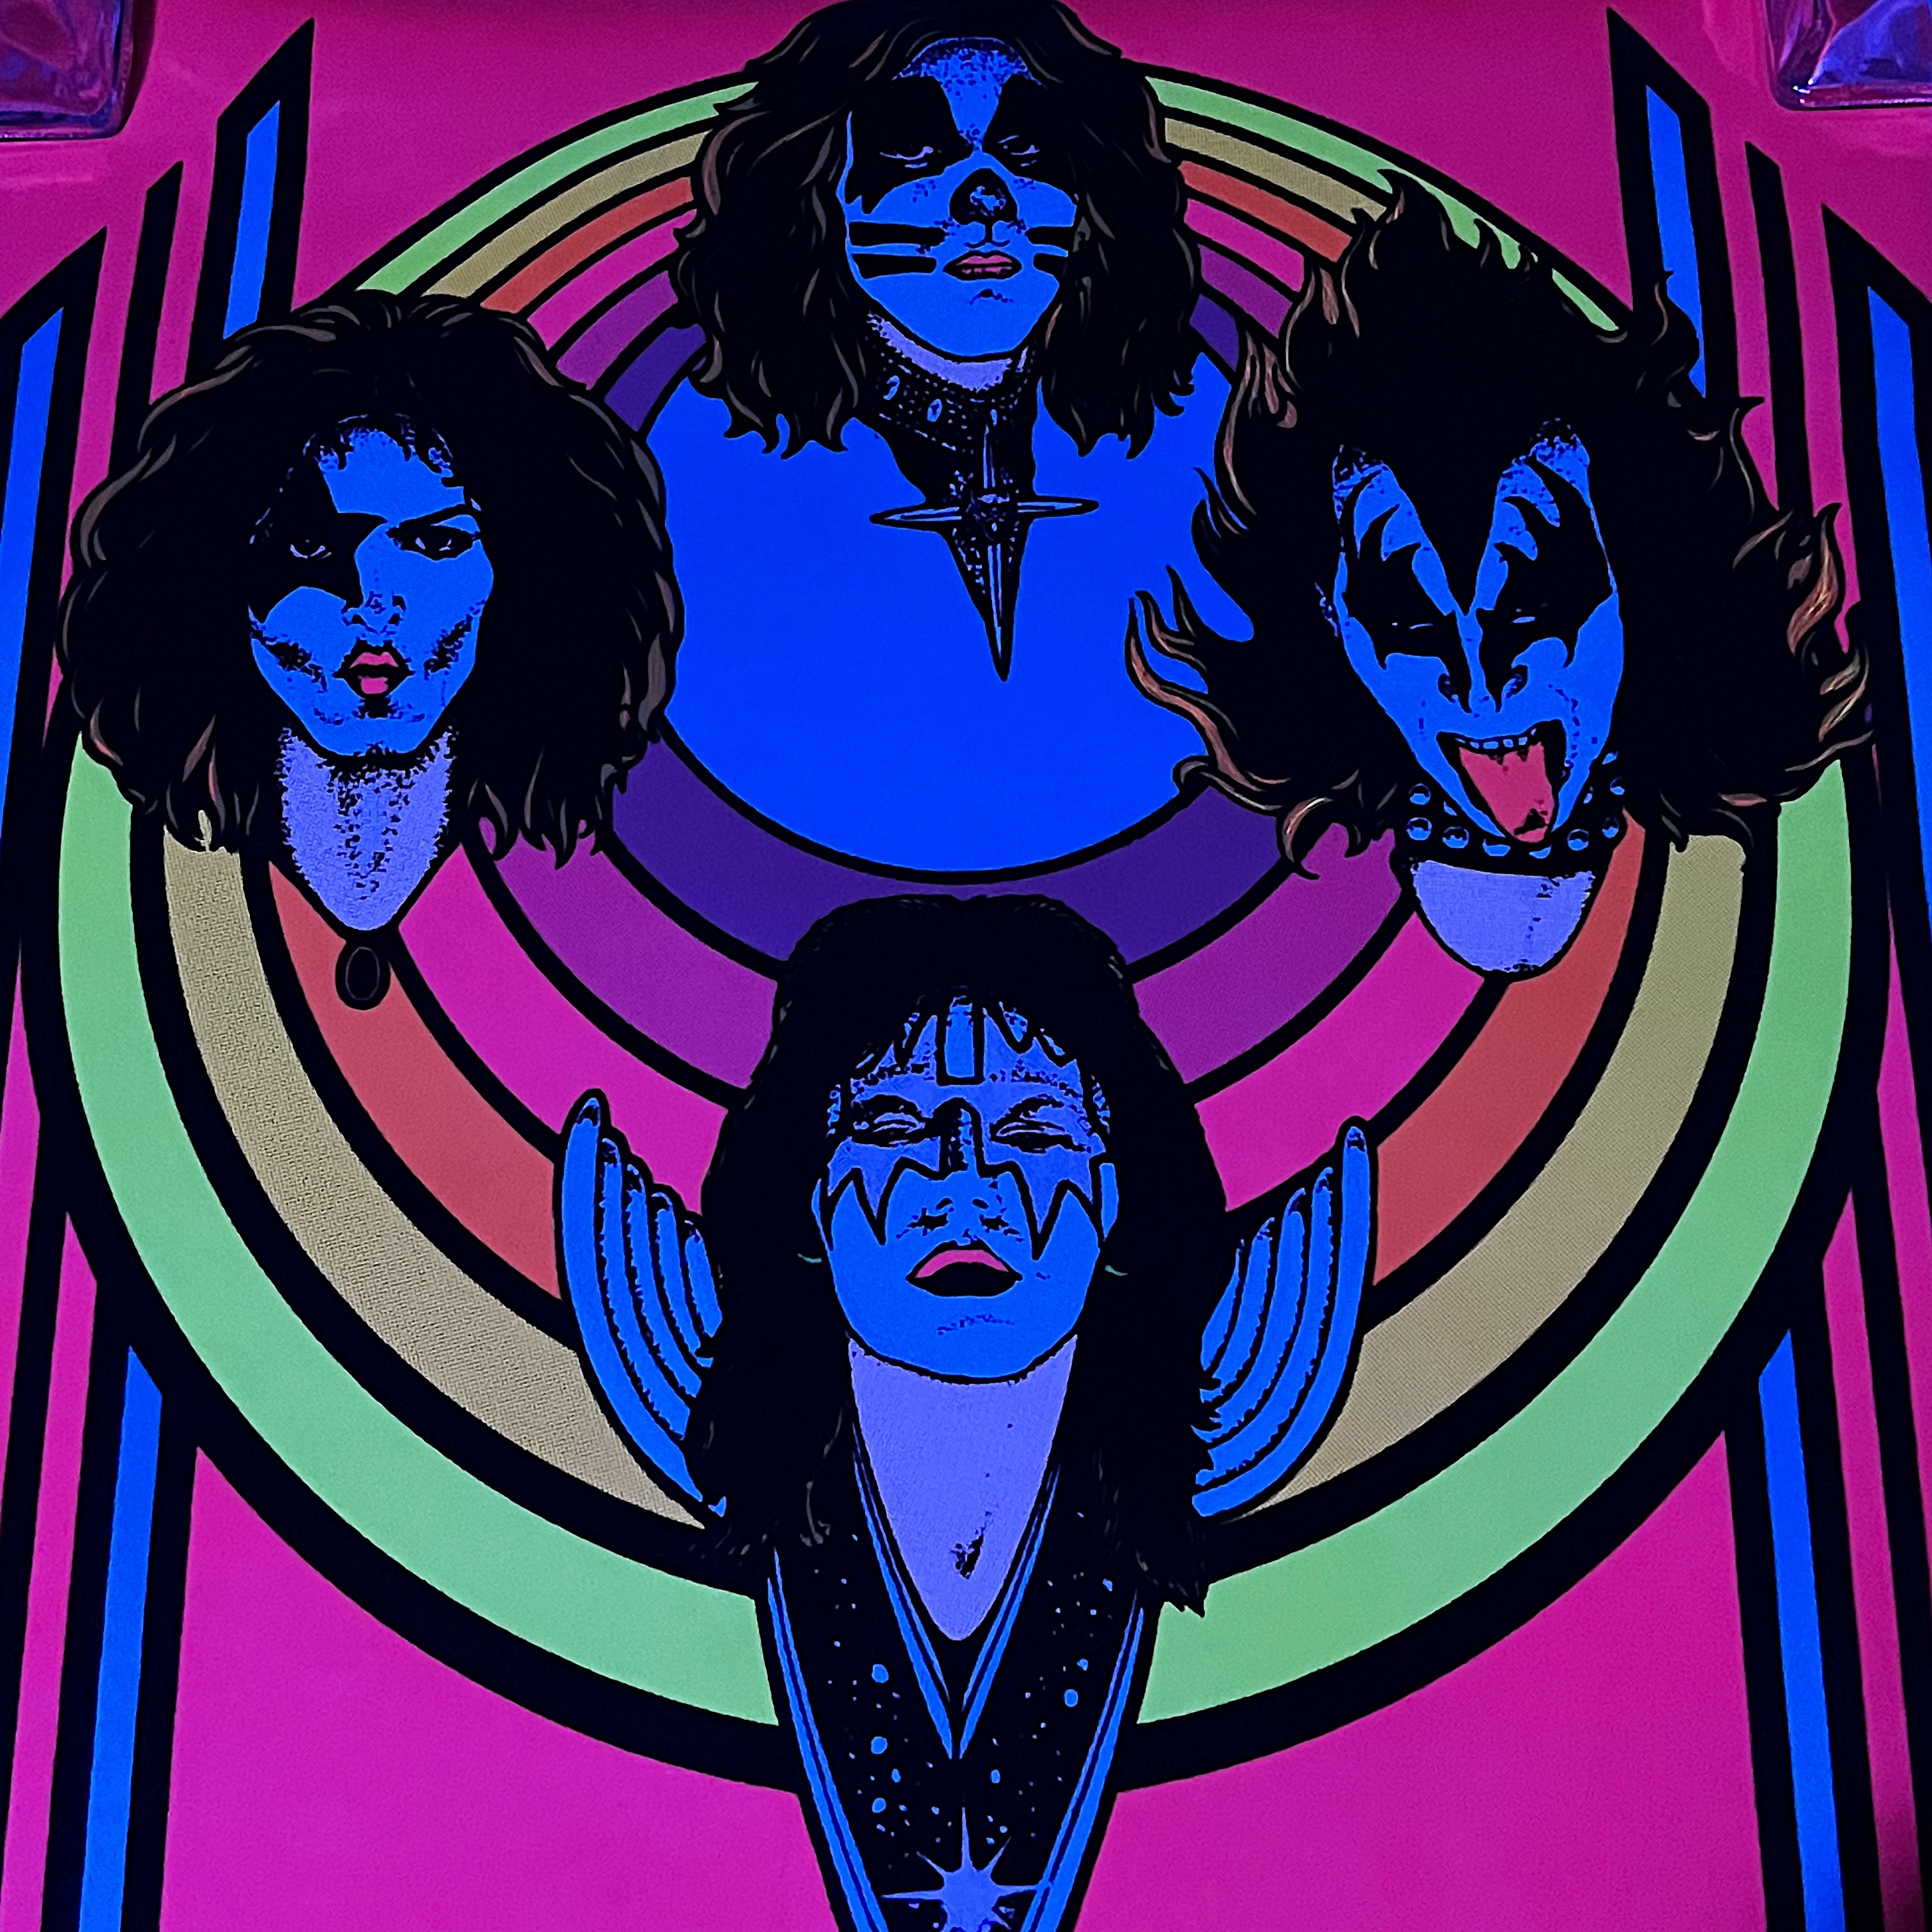 1970s Kiss Black Light Poster with Early Velvet Flocking